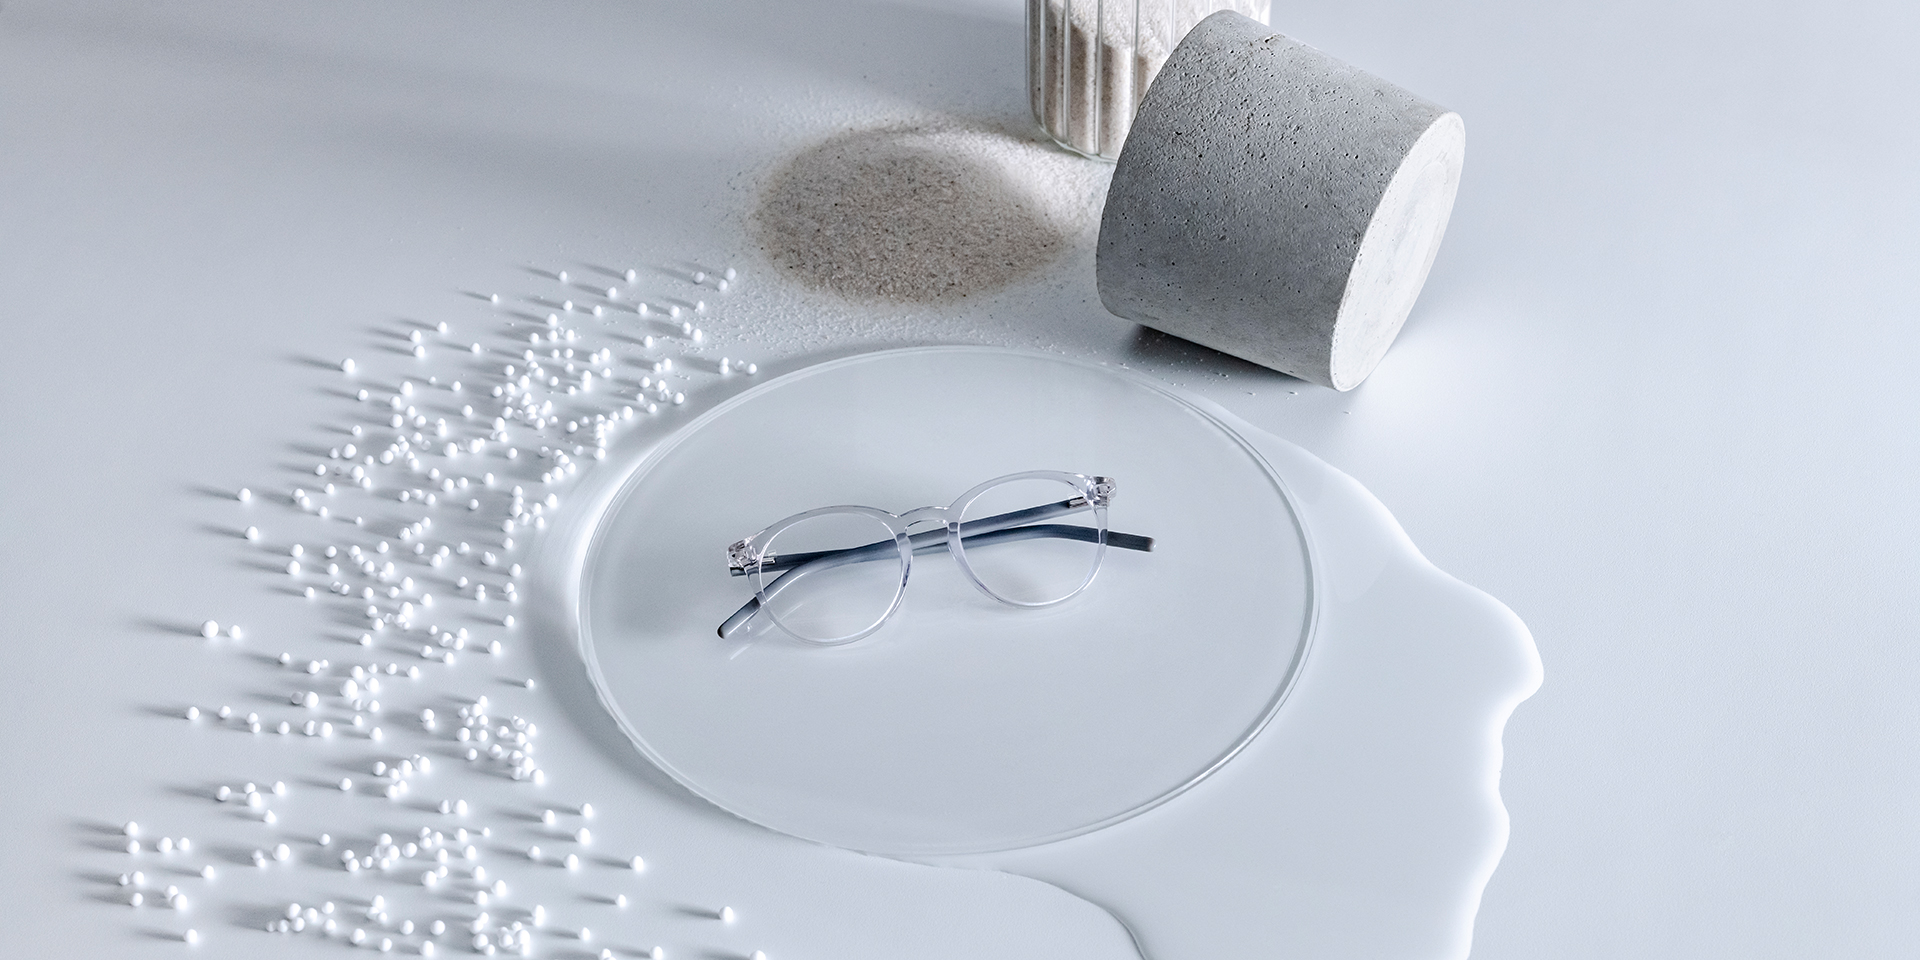 ZEISS Brillengläser mit DuraVision® Beschichtung auf einem Glaspodest, umgeben von Wasser, Sand, Perlen und Steinen.